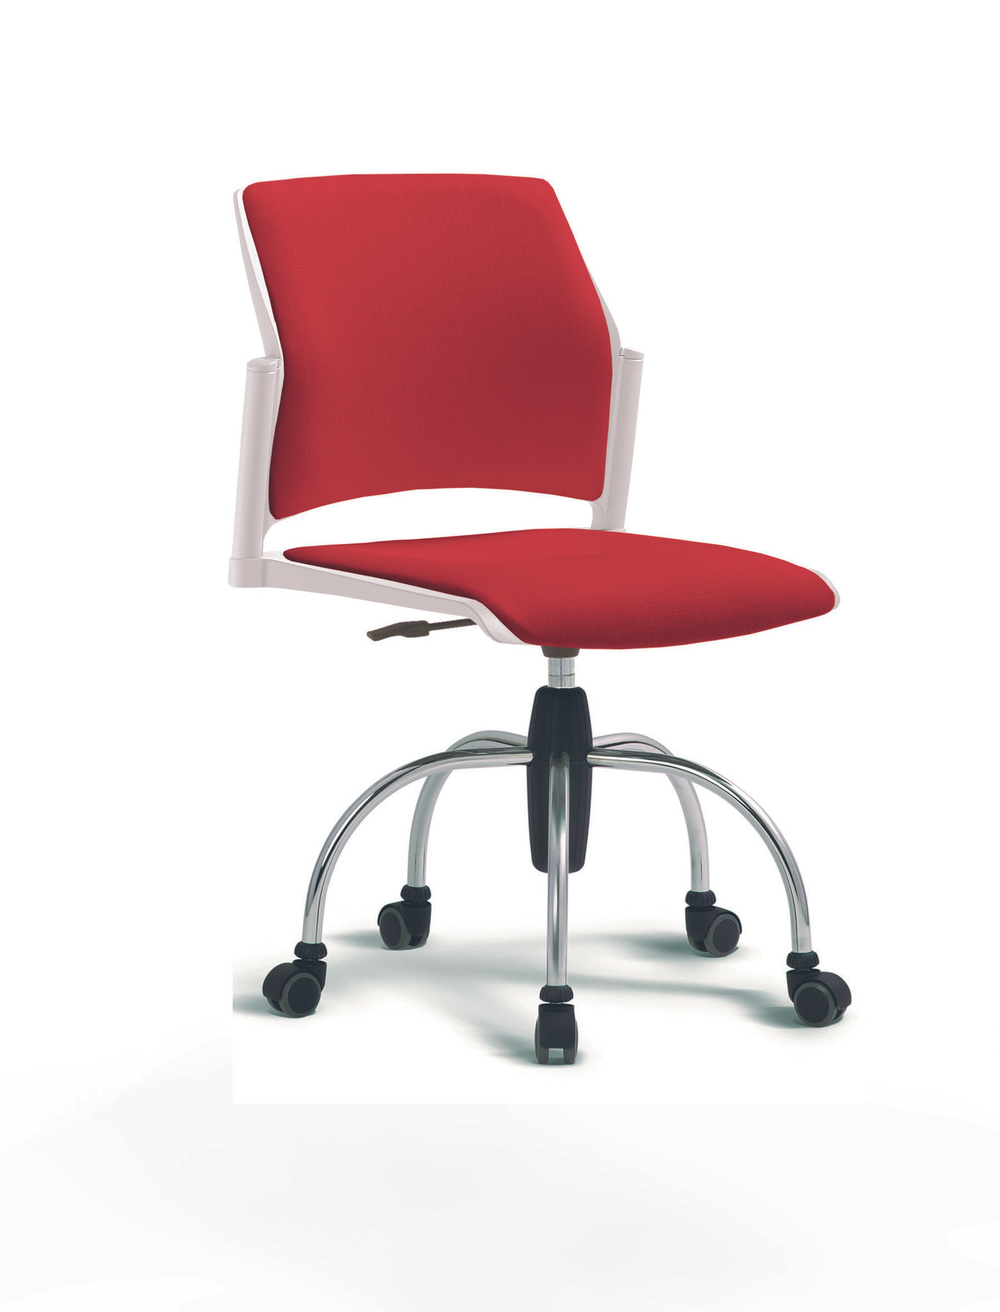 Кресло Rewind каркас хромированный, пластик белый, база паук хромированная, без подлокотников, сидение и спинка красные